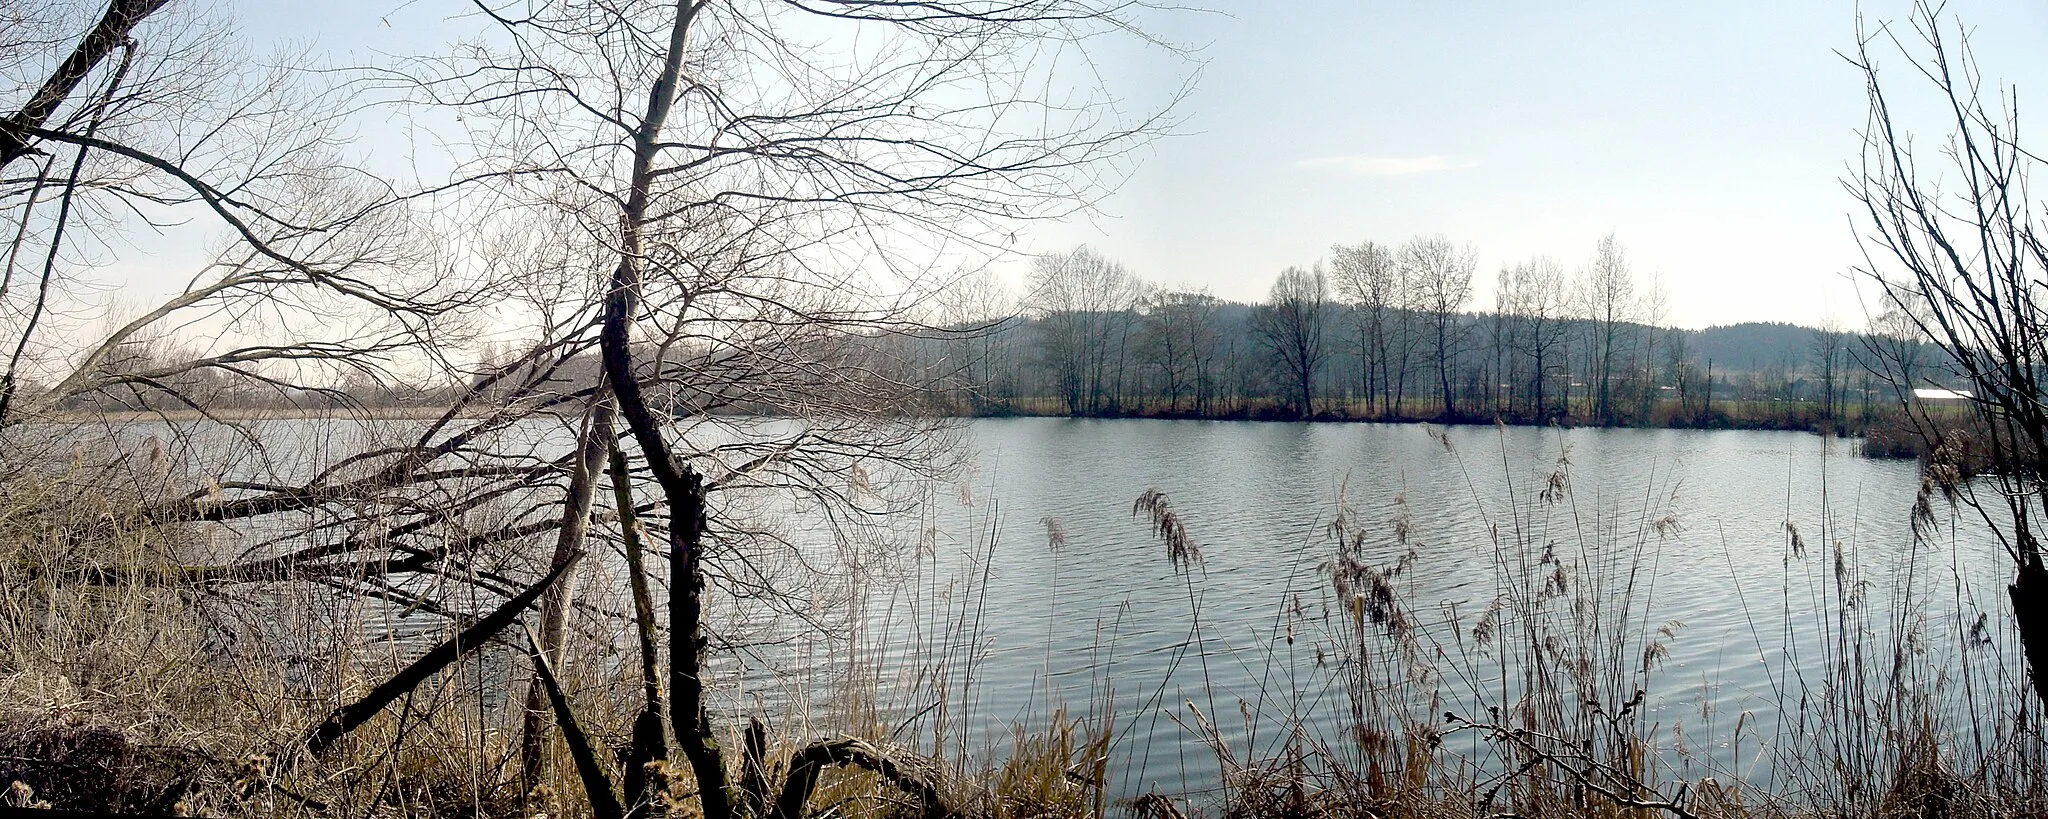 Photo showing: Ražický rybník - nature reservation in Písek district, Czech Republic.